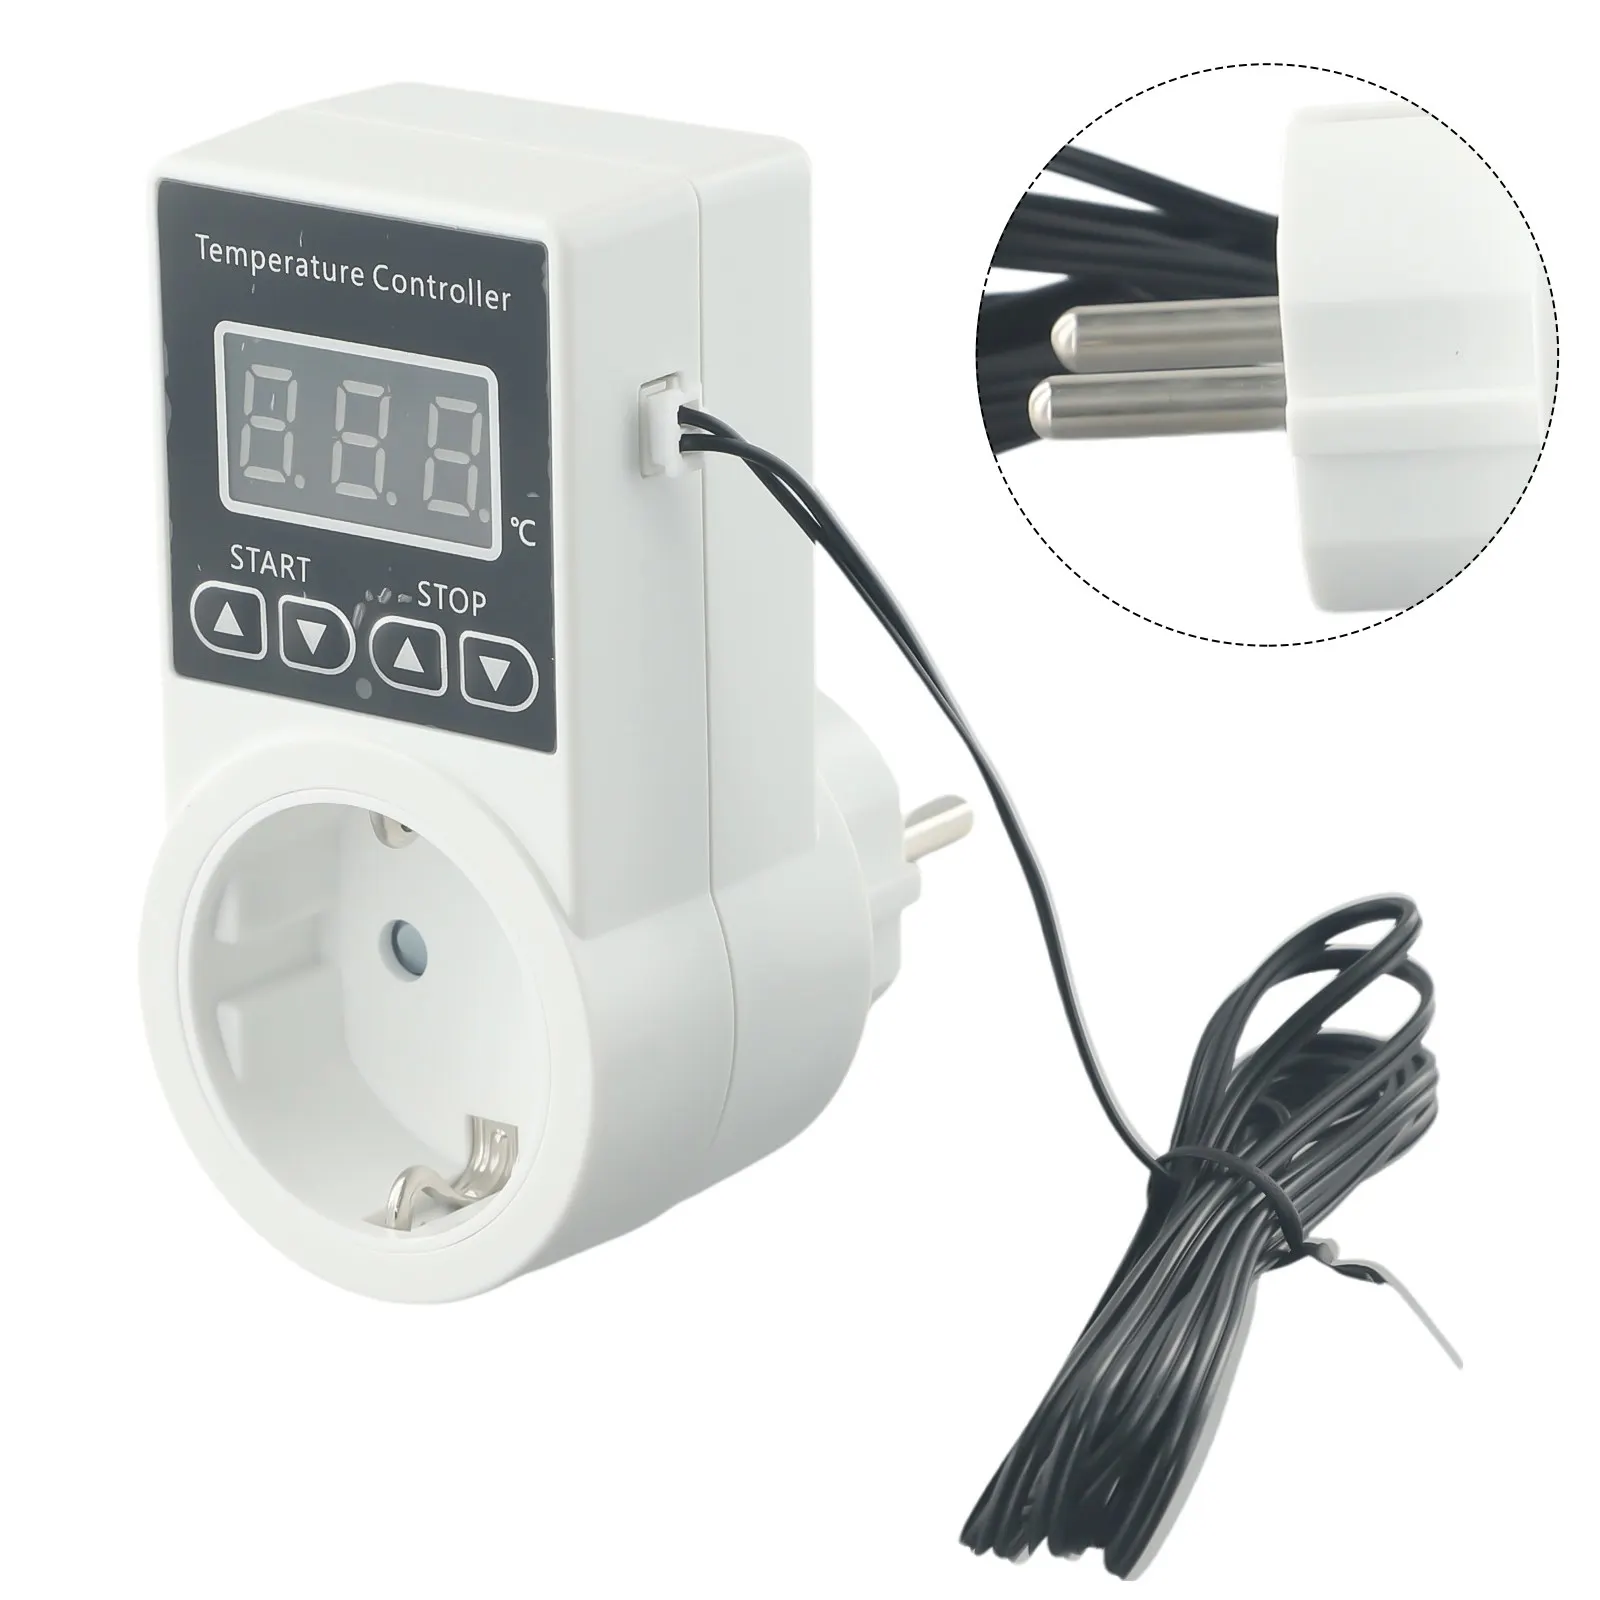 デジタルEUプラグ付き温度制御サーモスタット,温度コントローラー,100-240v ac,温室加熱,LCDディスプレイ